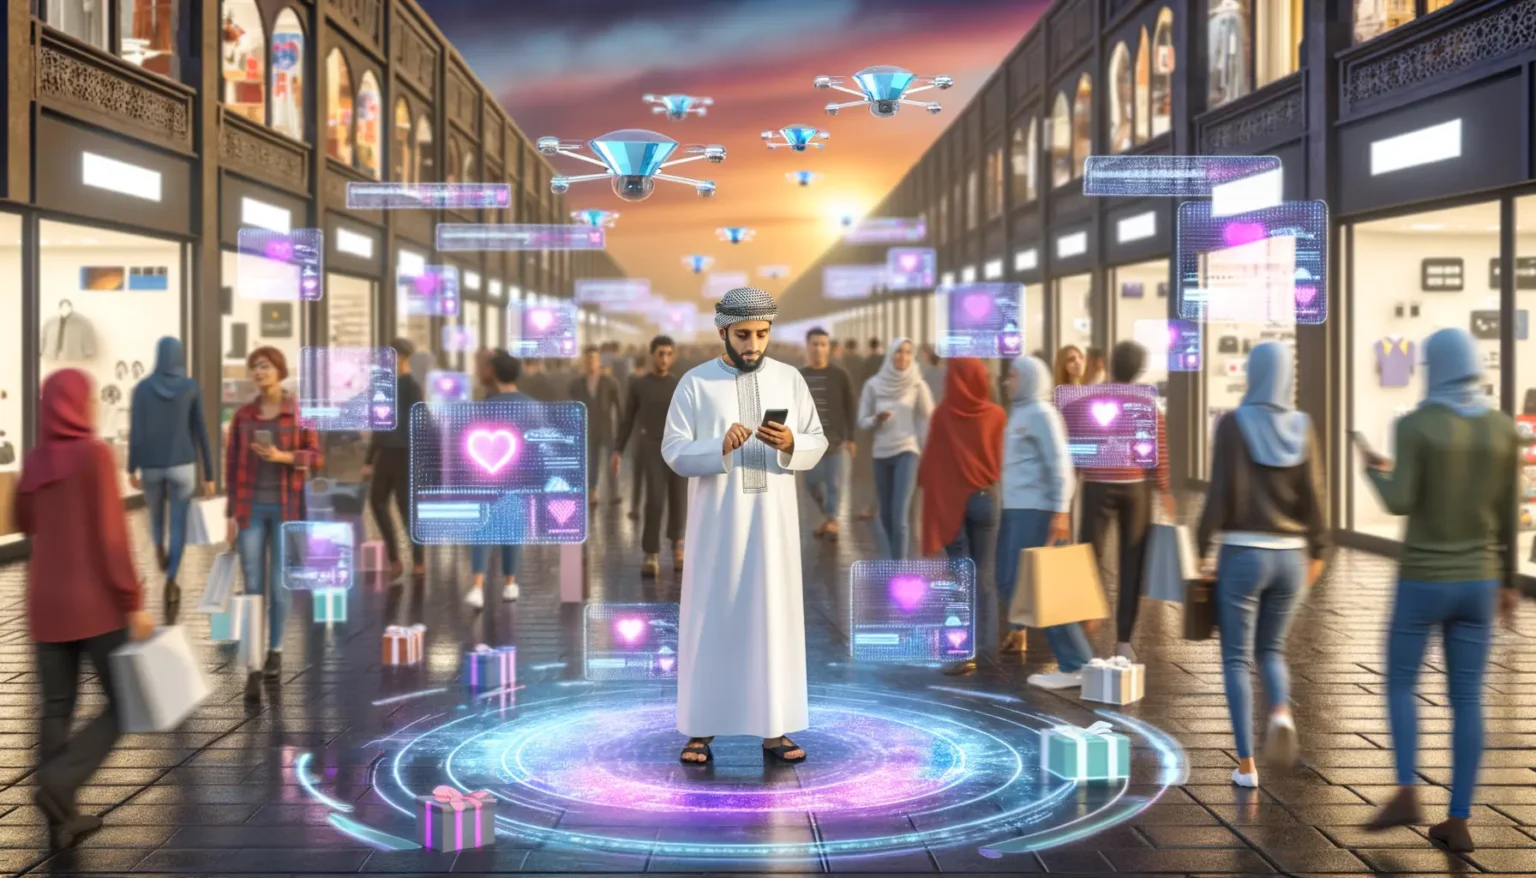 Ein Mann in traditioneller arabischer Kleidung steht in einer belebten Einkaufsstraße und blickt auf sein Smartphone. Um ihn herum erscheinen futuristische holographische Displays mit Herzsymbolen. Über der Menge schweben Drohnen, und auf dem Boden befinden sich holographische Projektionen und Geschenkboxen. Die Szene stellt eine hochmoderne, technologisierte Einkaufsumgebung dar.